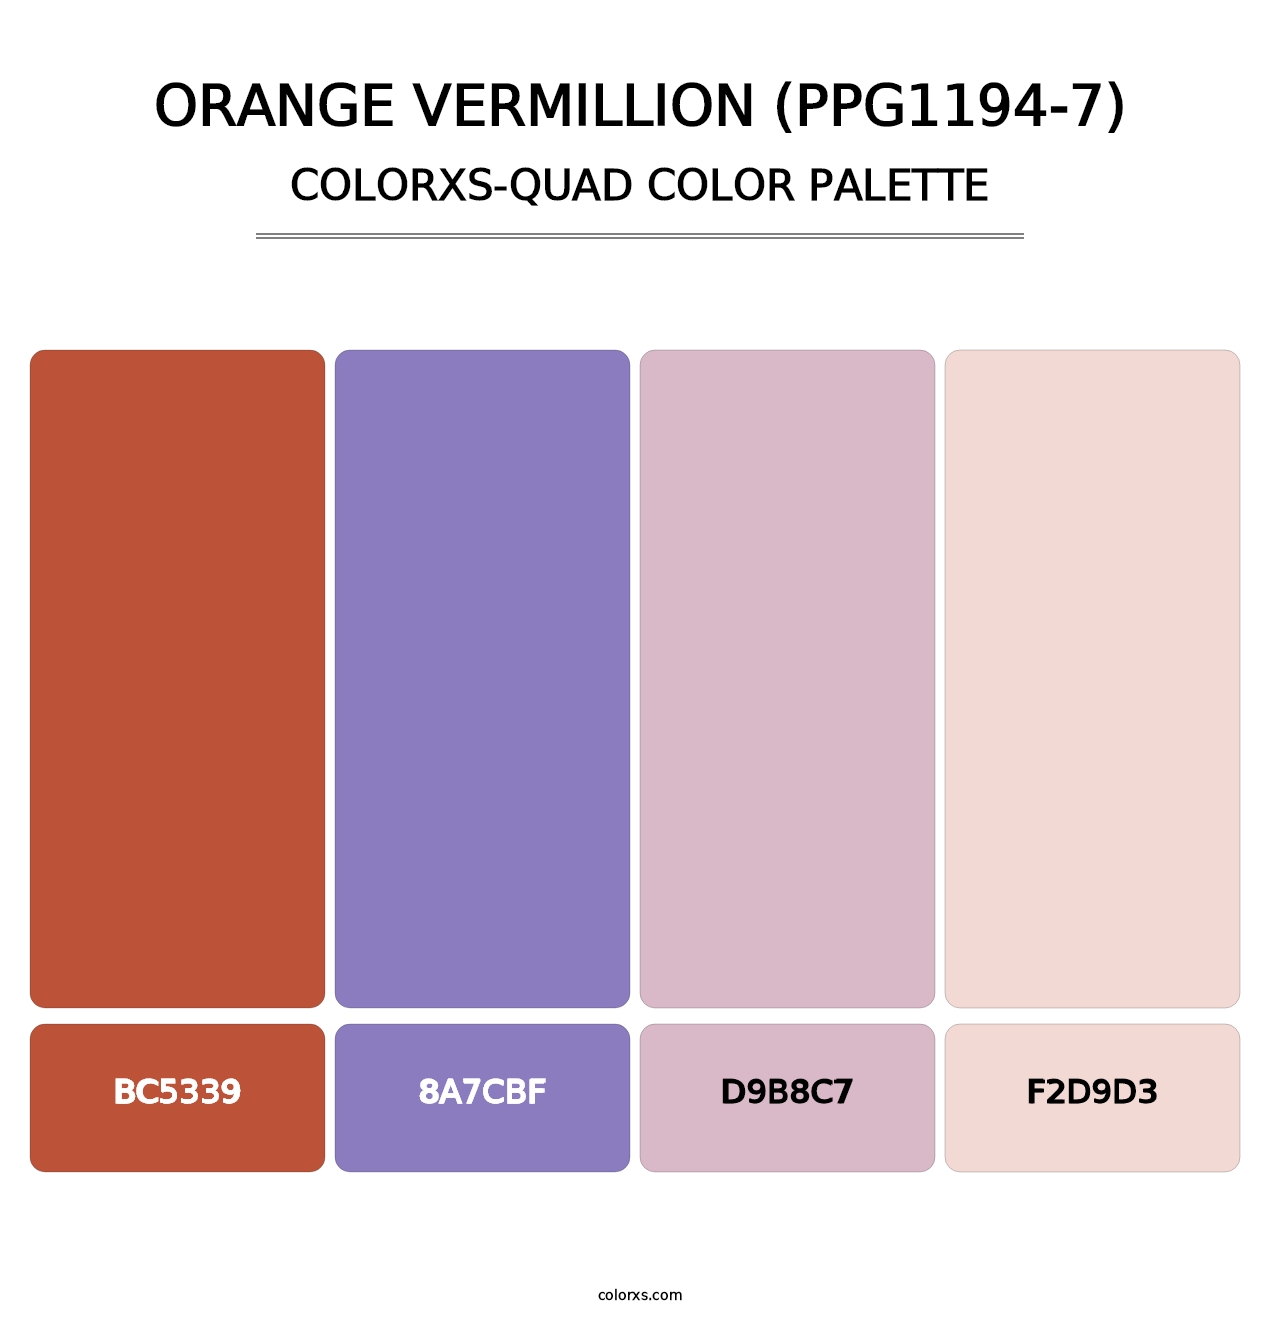 Orange Vermillion (PPG1194-7) - Colorxs Quad Palette